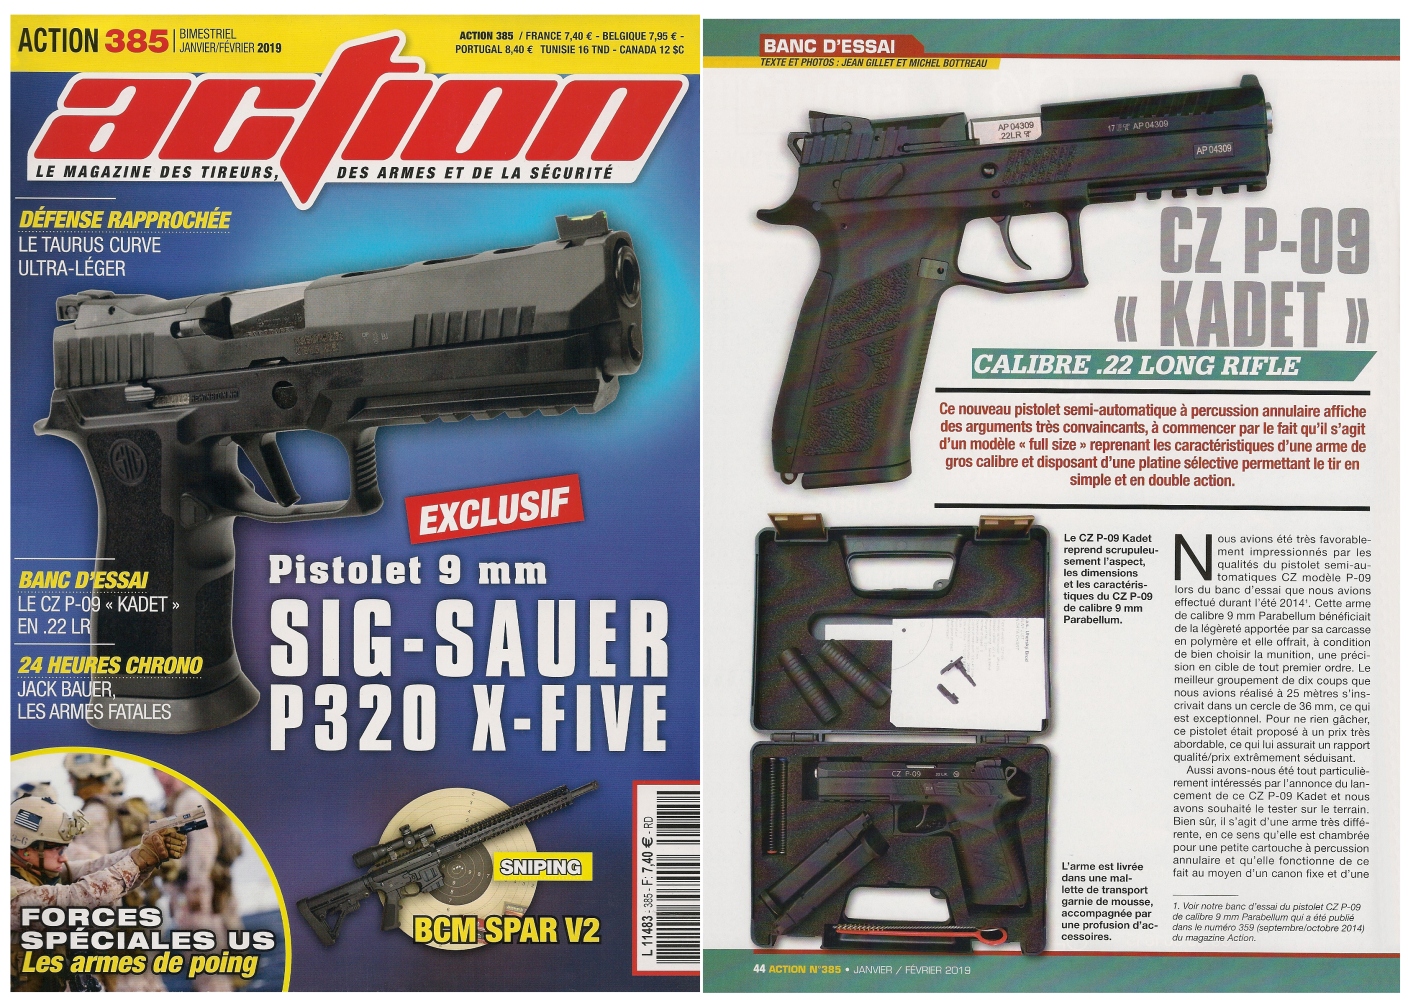 Le banc d’essai du pistolet CZ P-09 Kadet a été publié sur 5 pages dans le magazine Action n°385 (janvier/février 2019). 